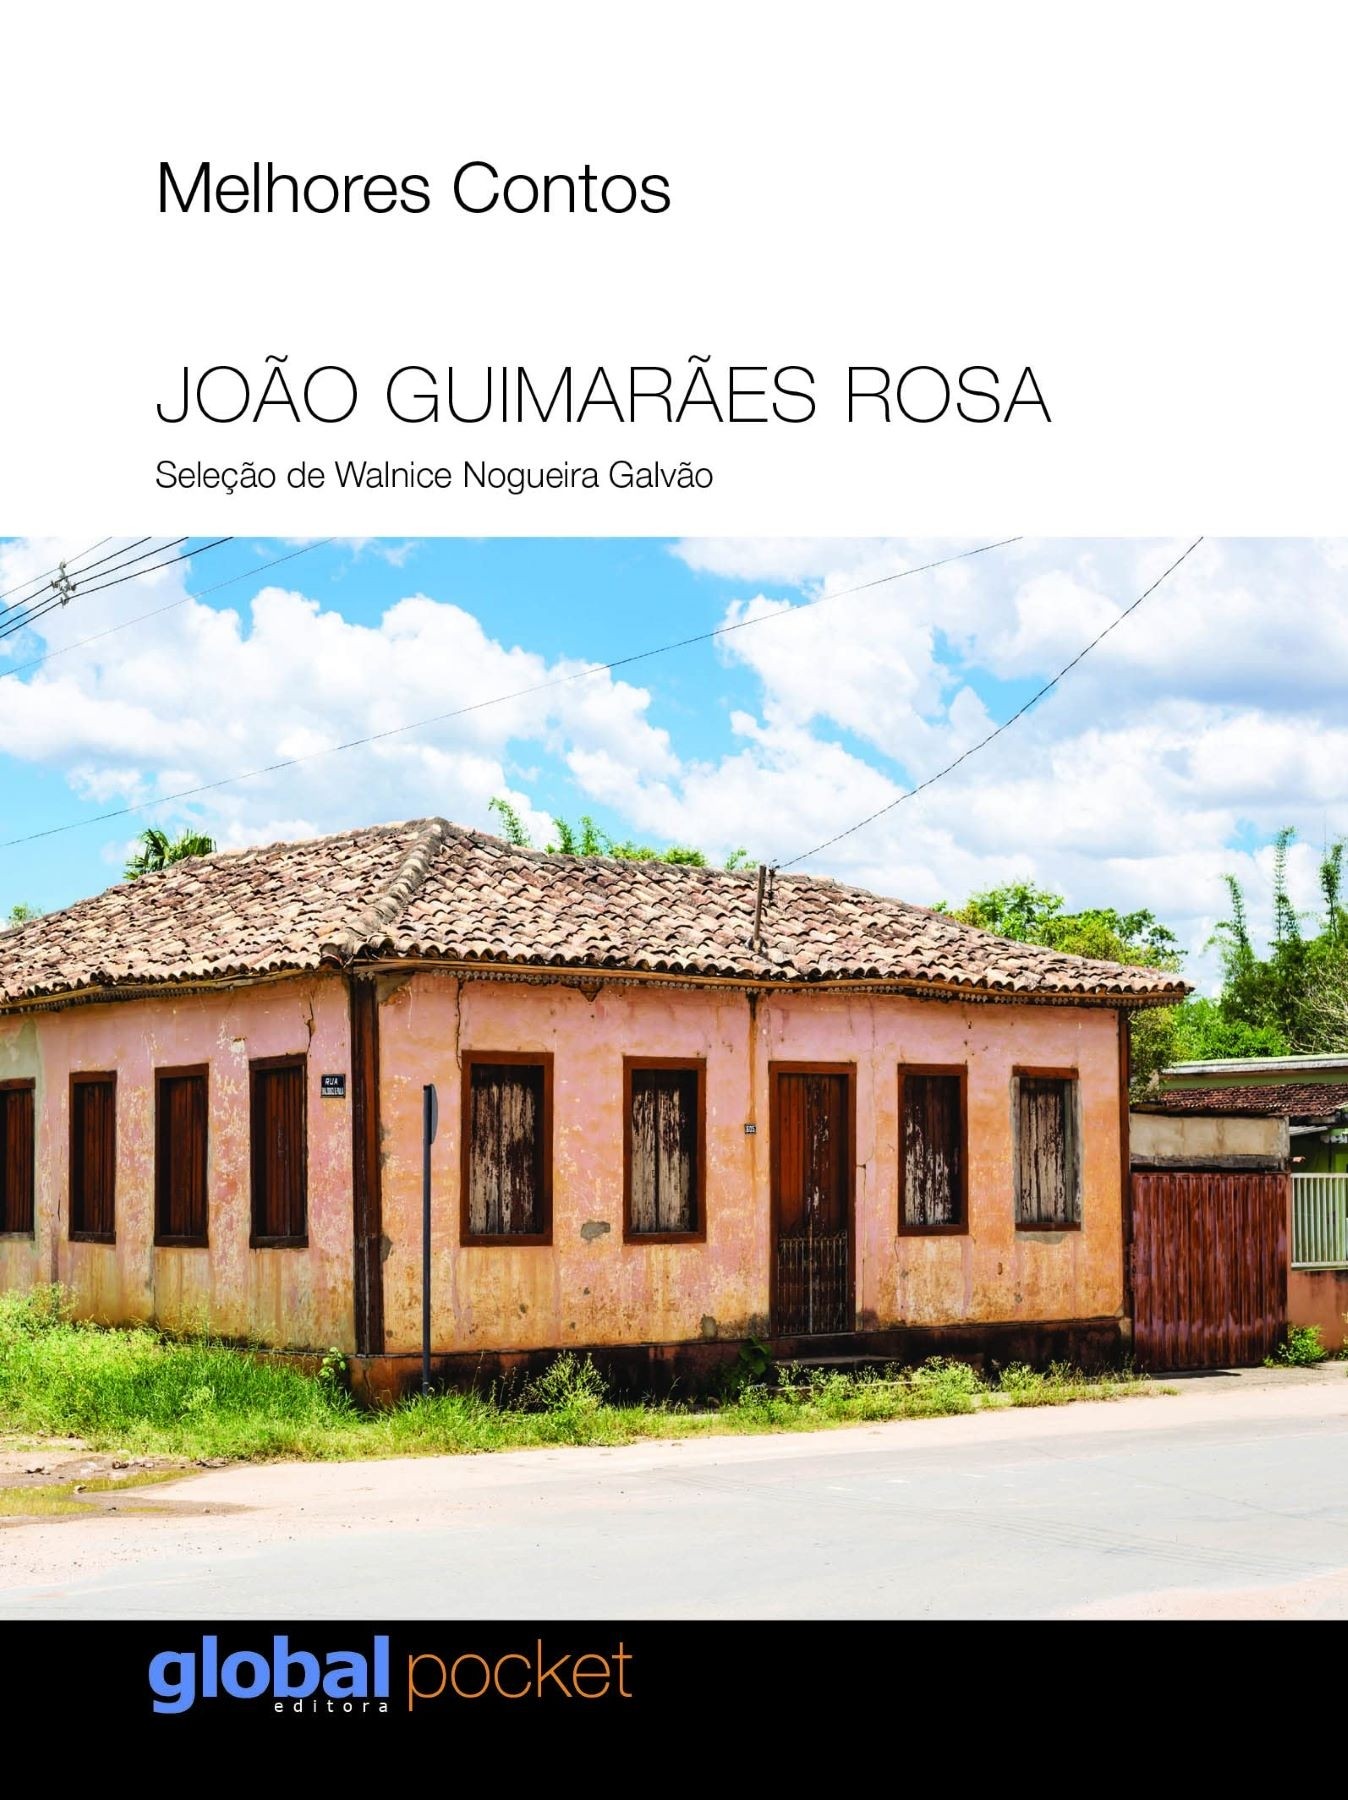 Melhores Contos João Guimarães Rosa (pocket)